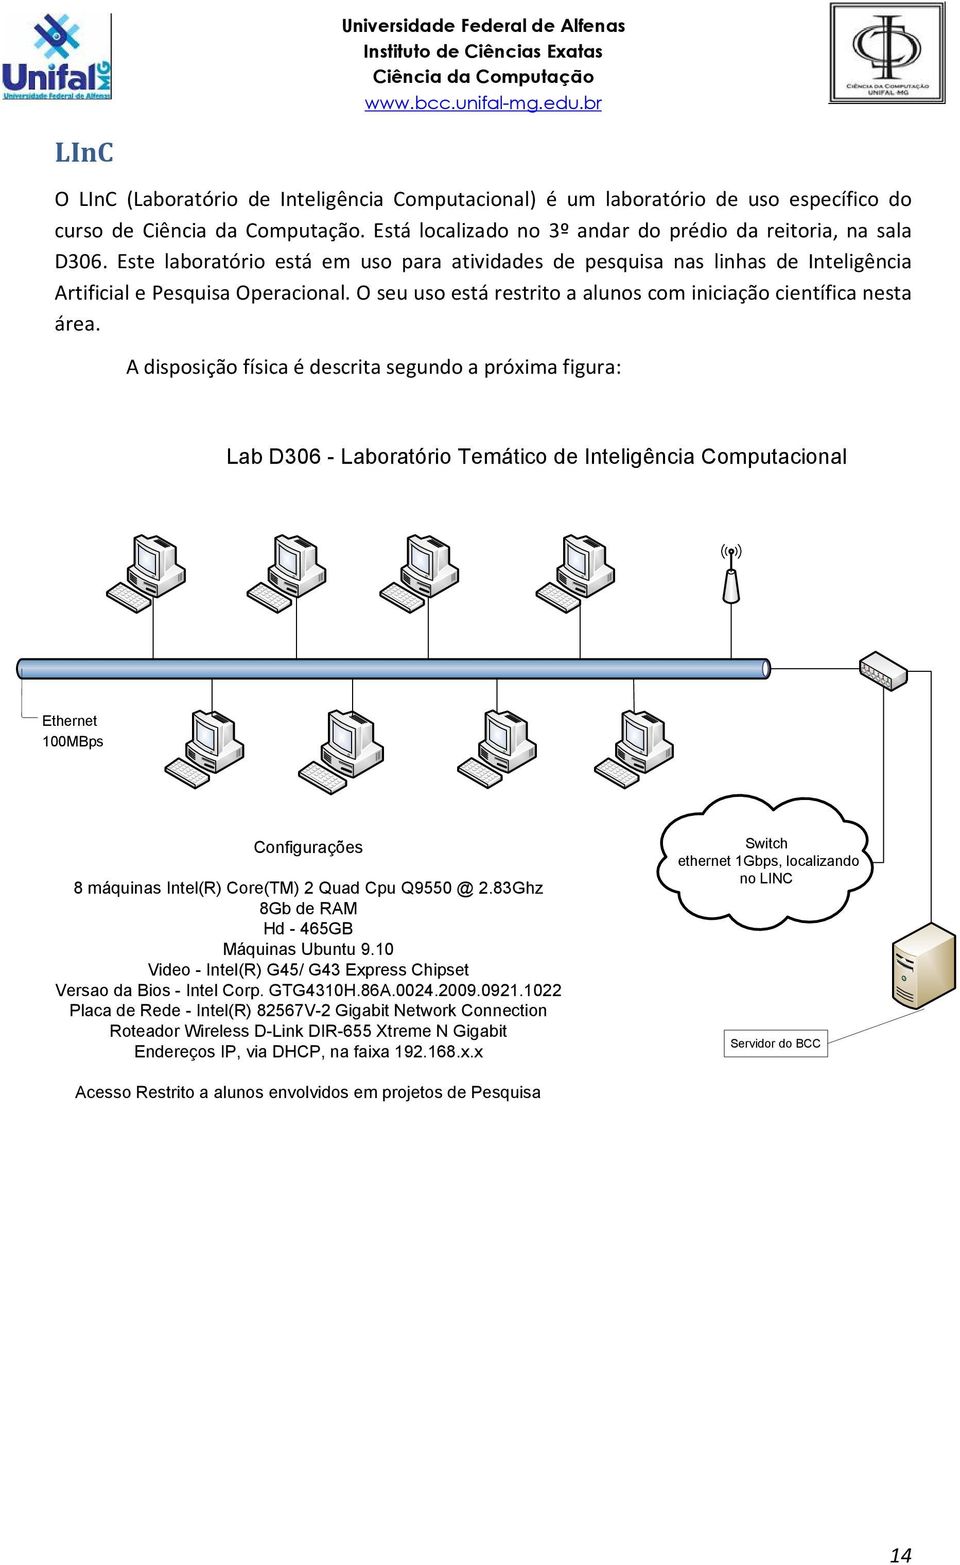 A disposição física é descrita segundo a próxima figura: Lab D306 - Laboratório Temático de Inteligência Computacional Ethernet 100MBps Configurações 8 máquinas Intel(R) Core(TM) 2 Quad Cpu Q9550 @ 2.